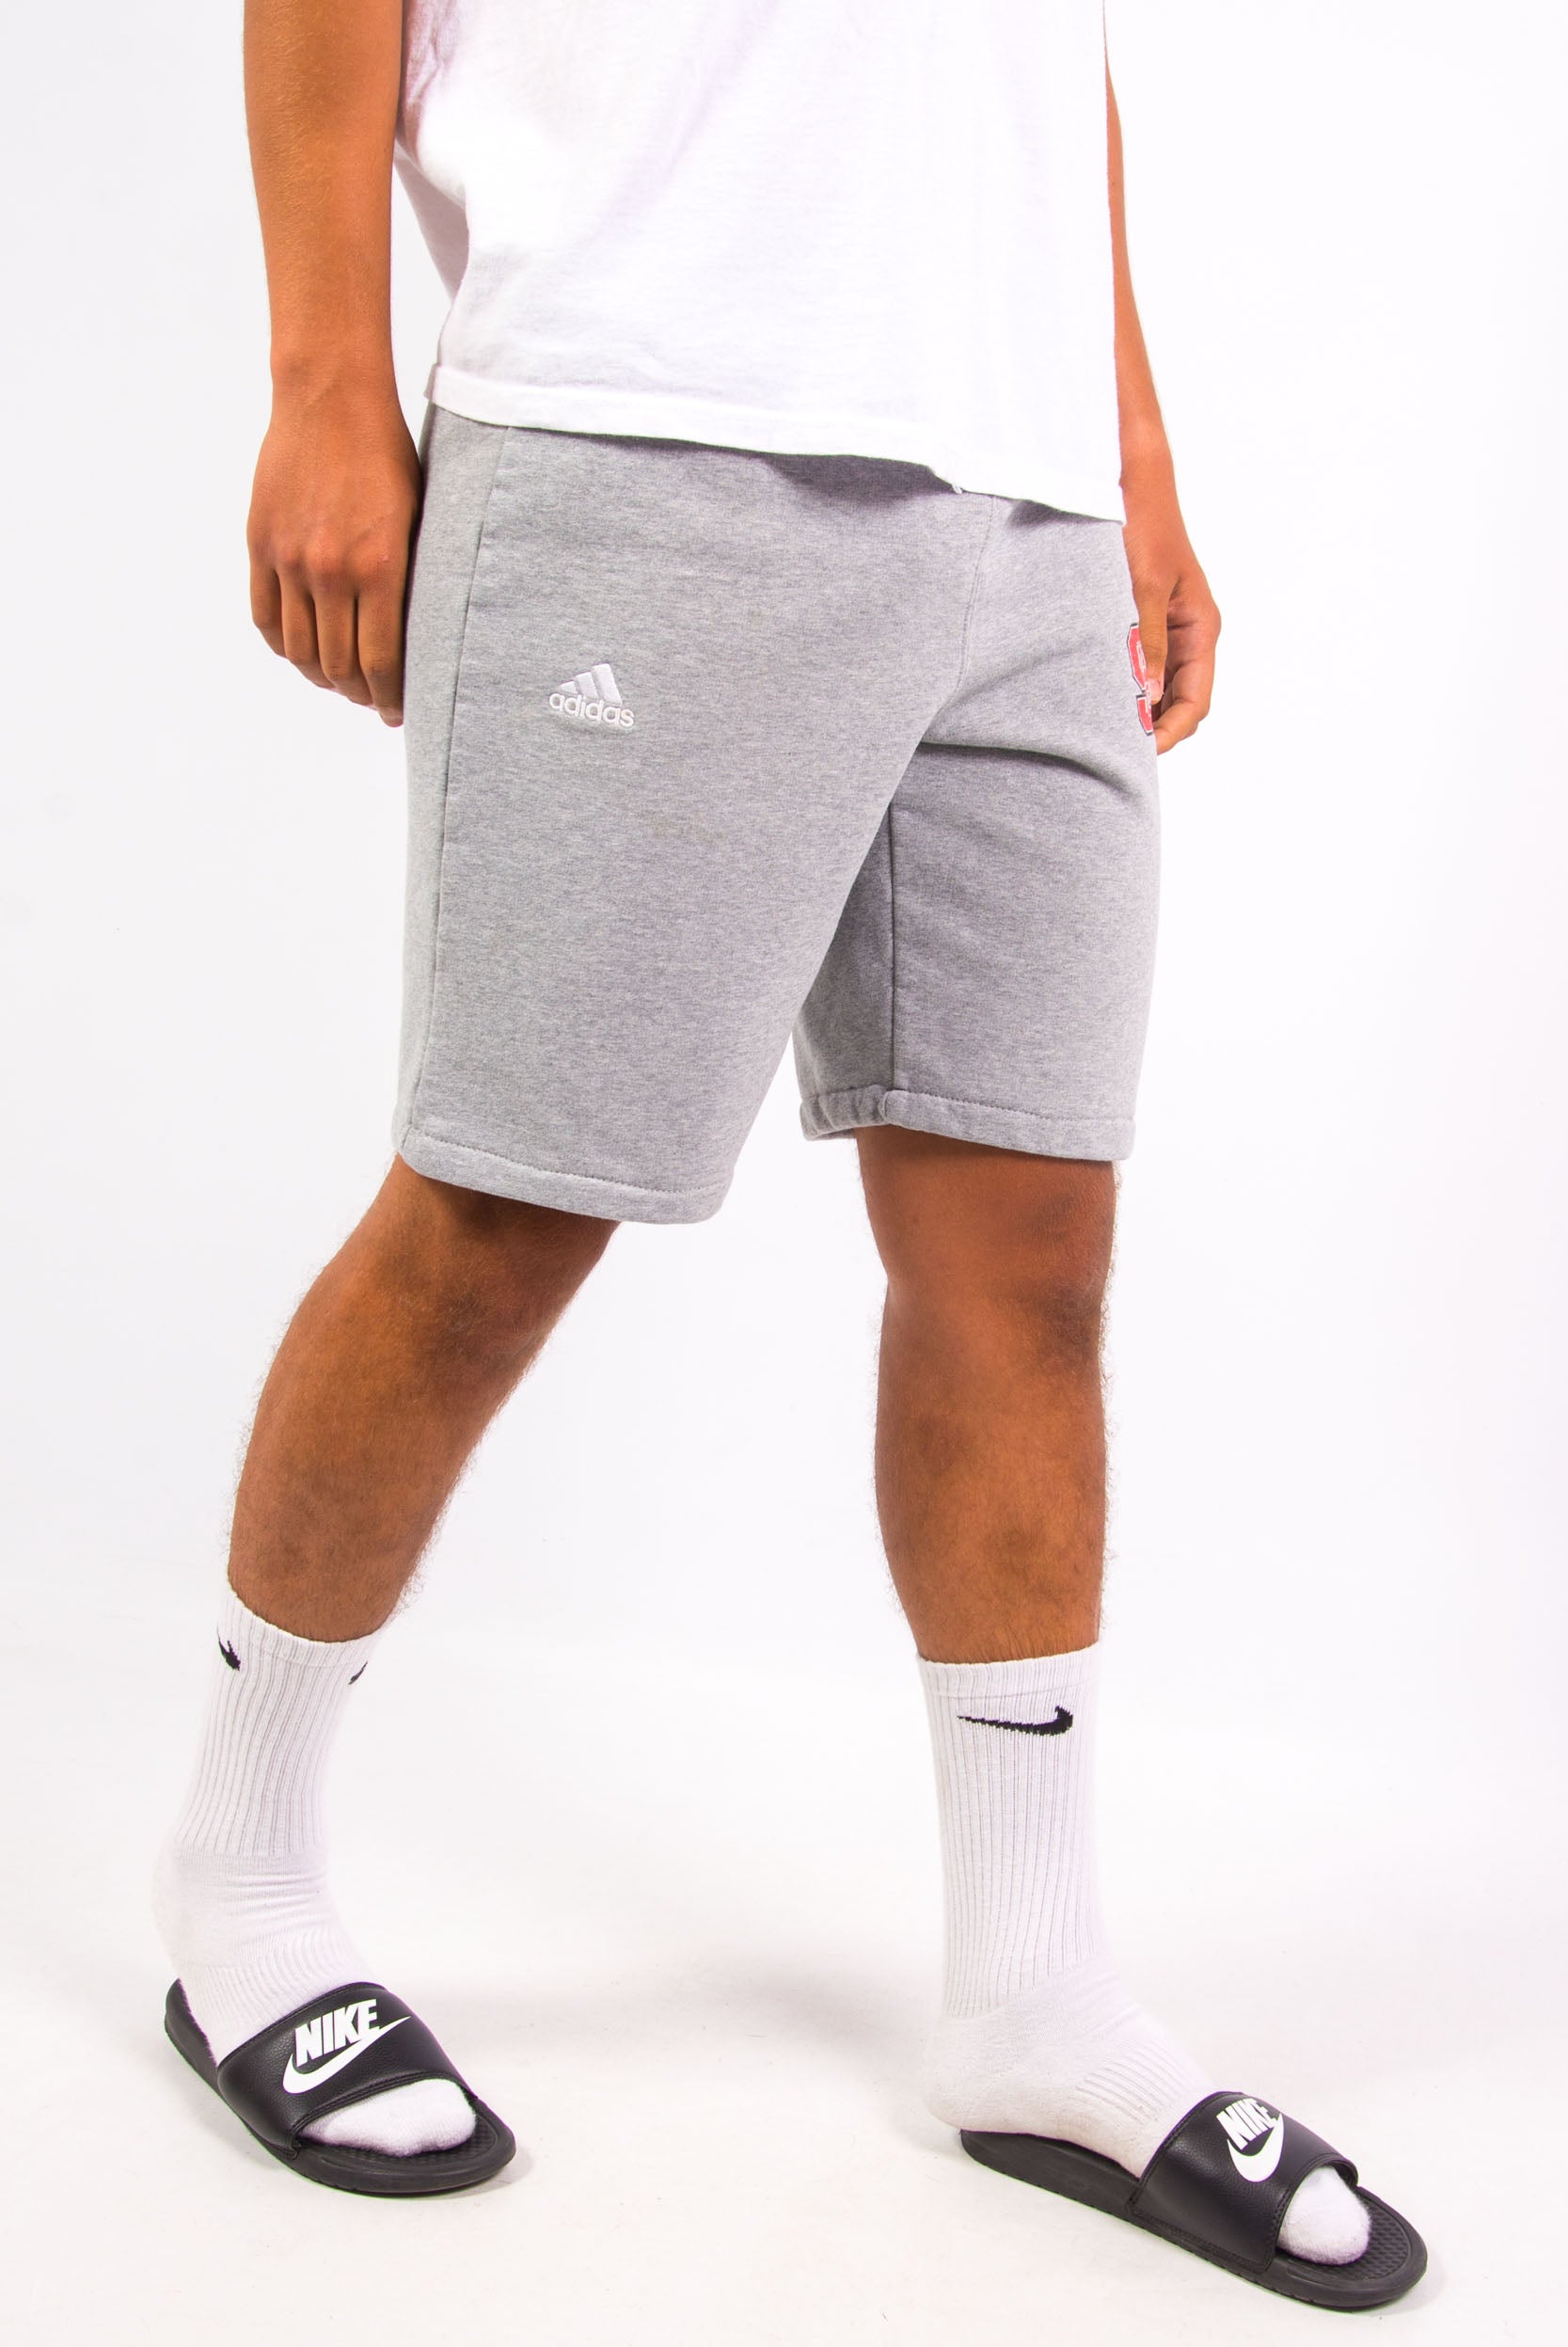 adidas grey jogger shorts